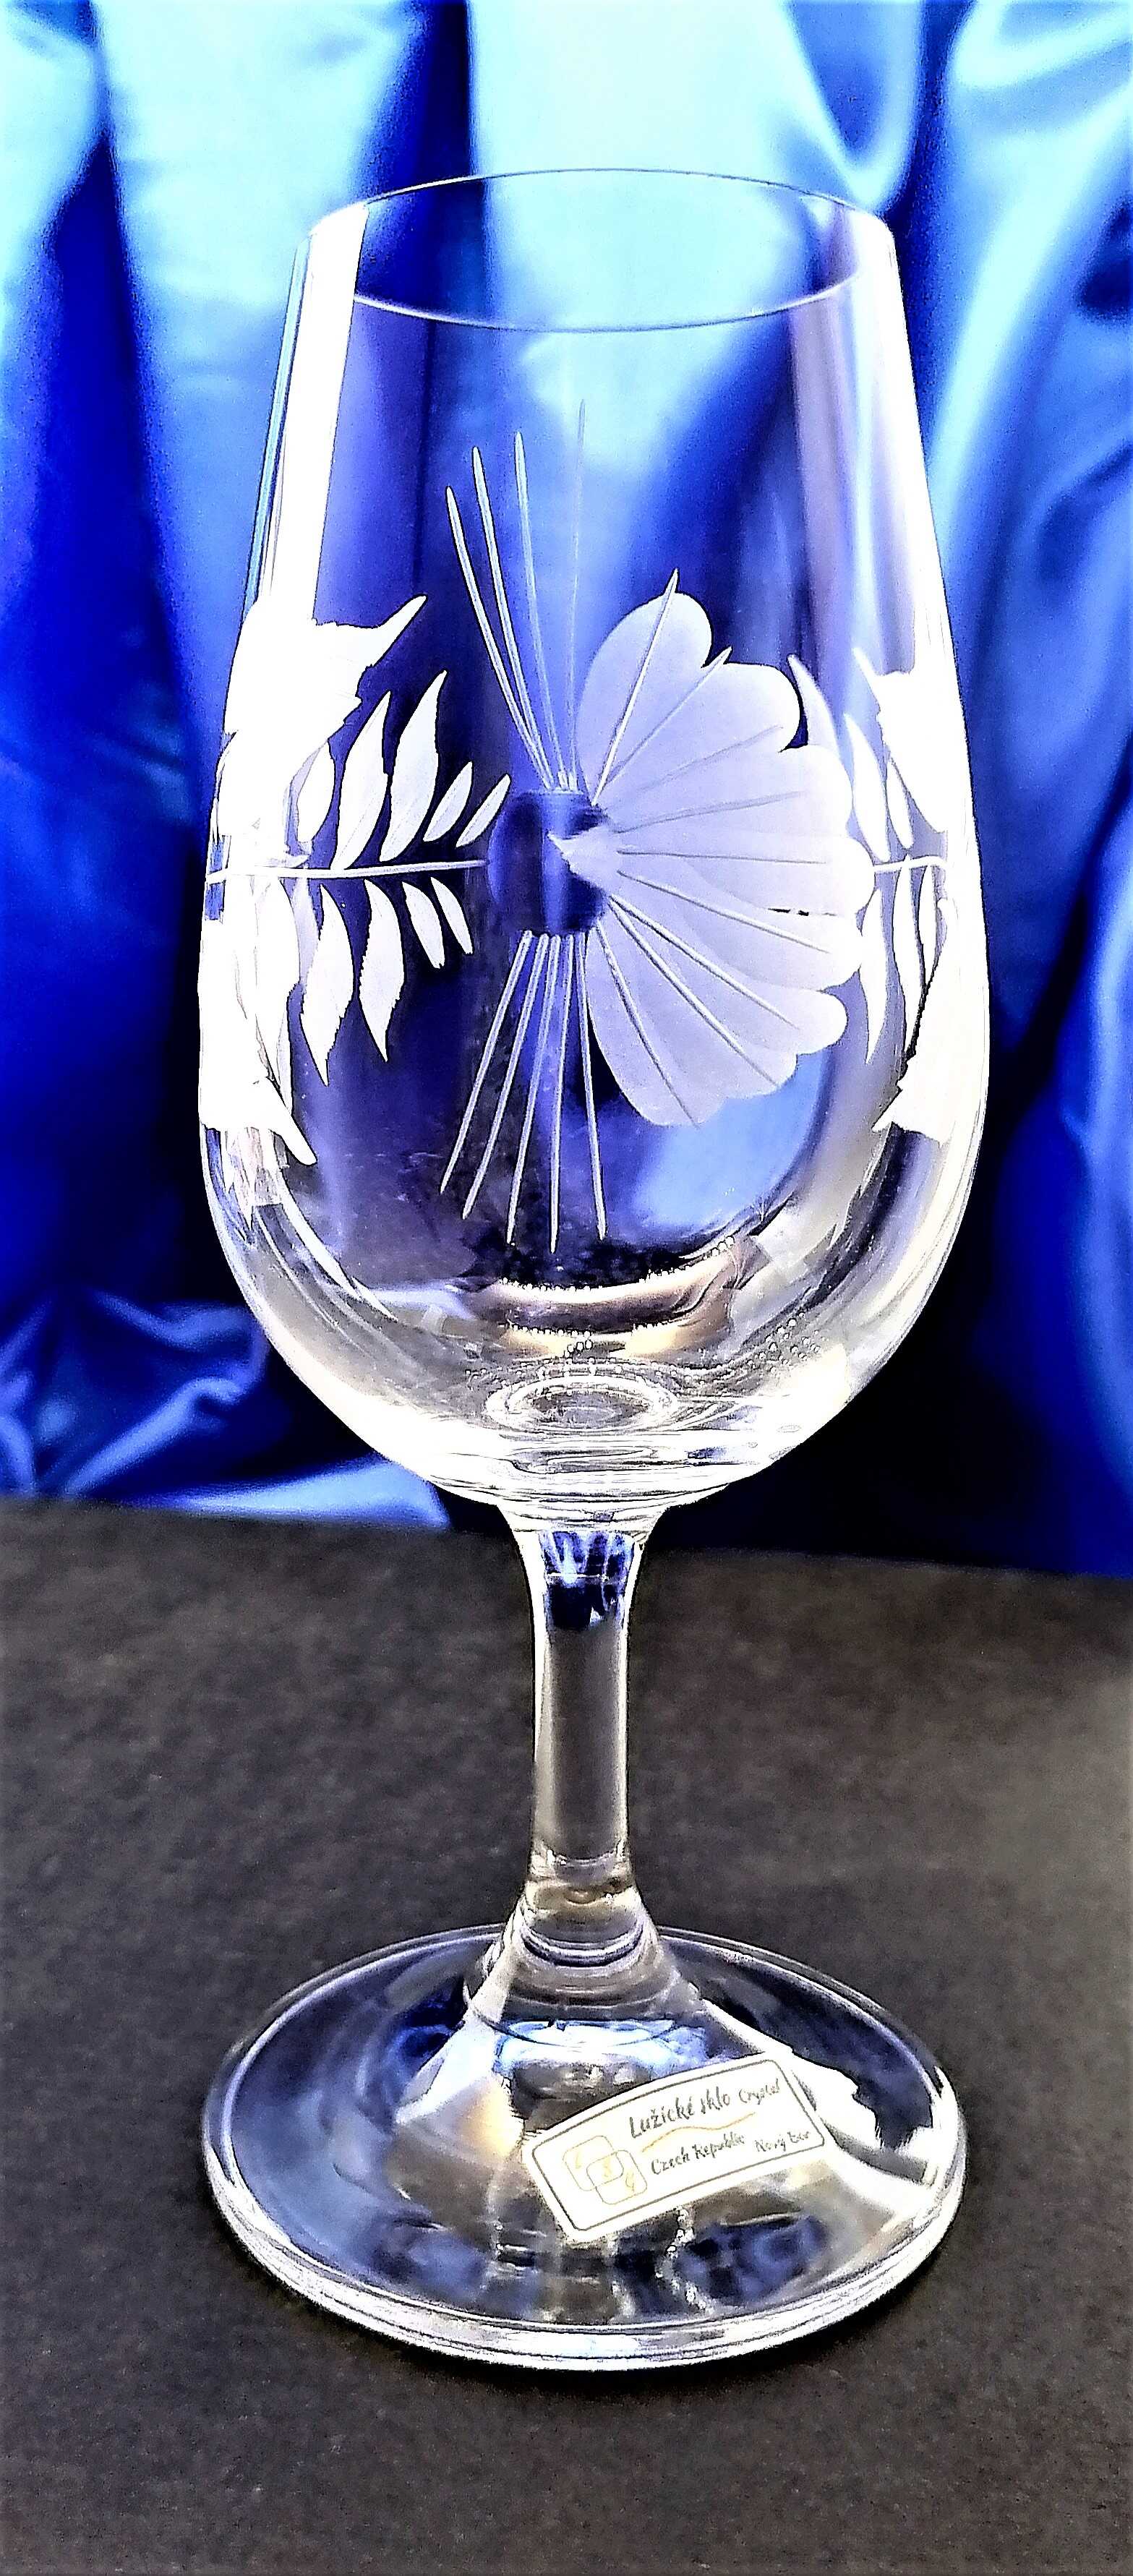 Weißweingläser/ Weißwein Glas Hand geschliffen Muster Hagebutte Glas-1095 200 ml 6 Stk.